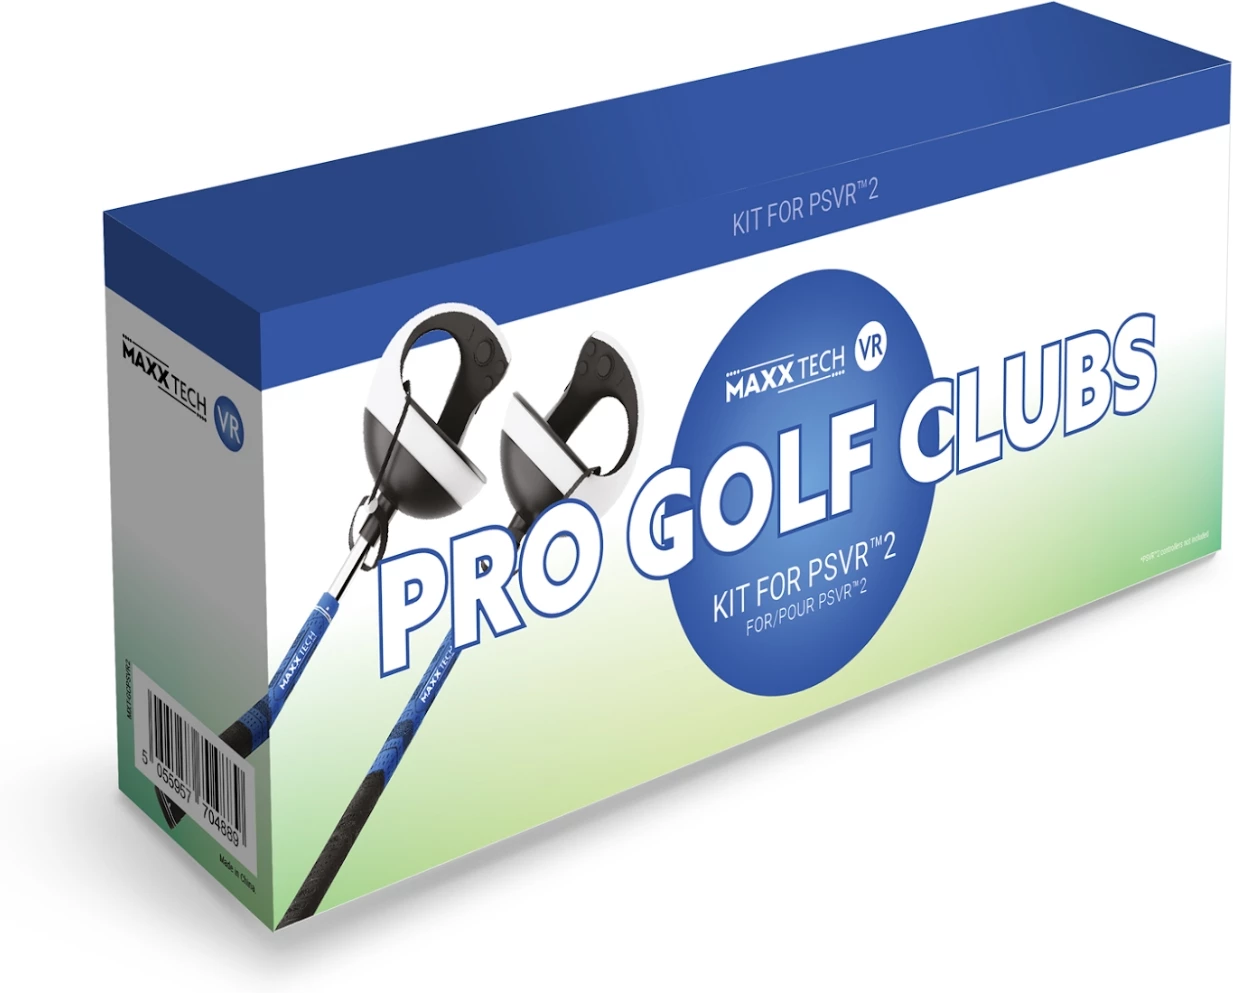 VR Pro Golf Clubs Kit (PSVR2) (PS5), Maxxtech